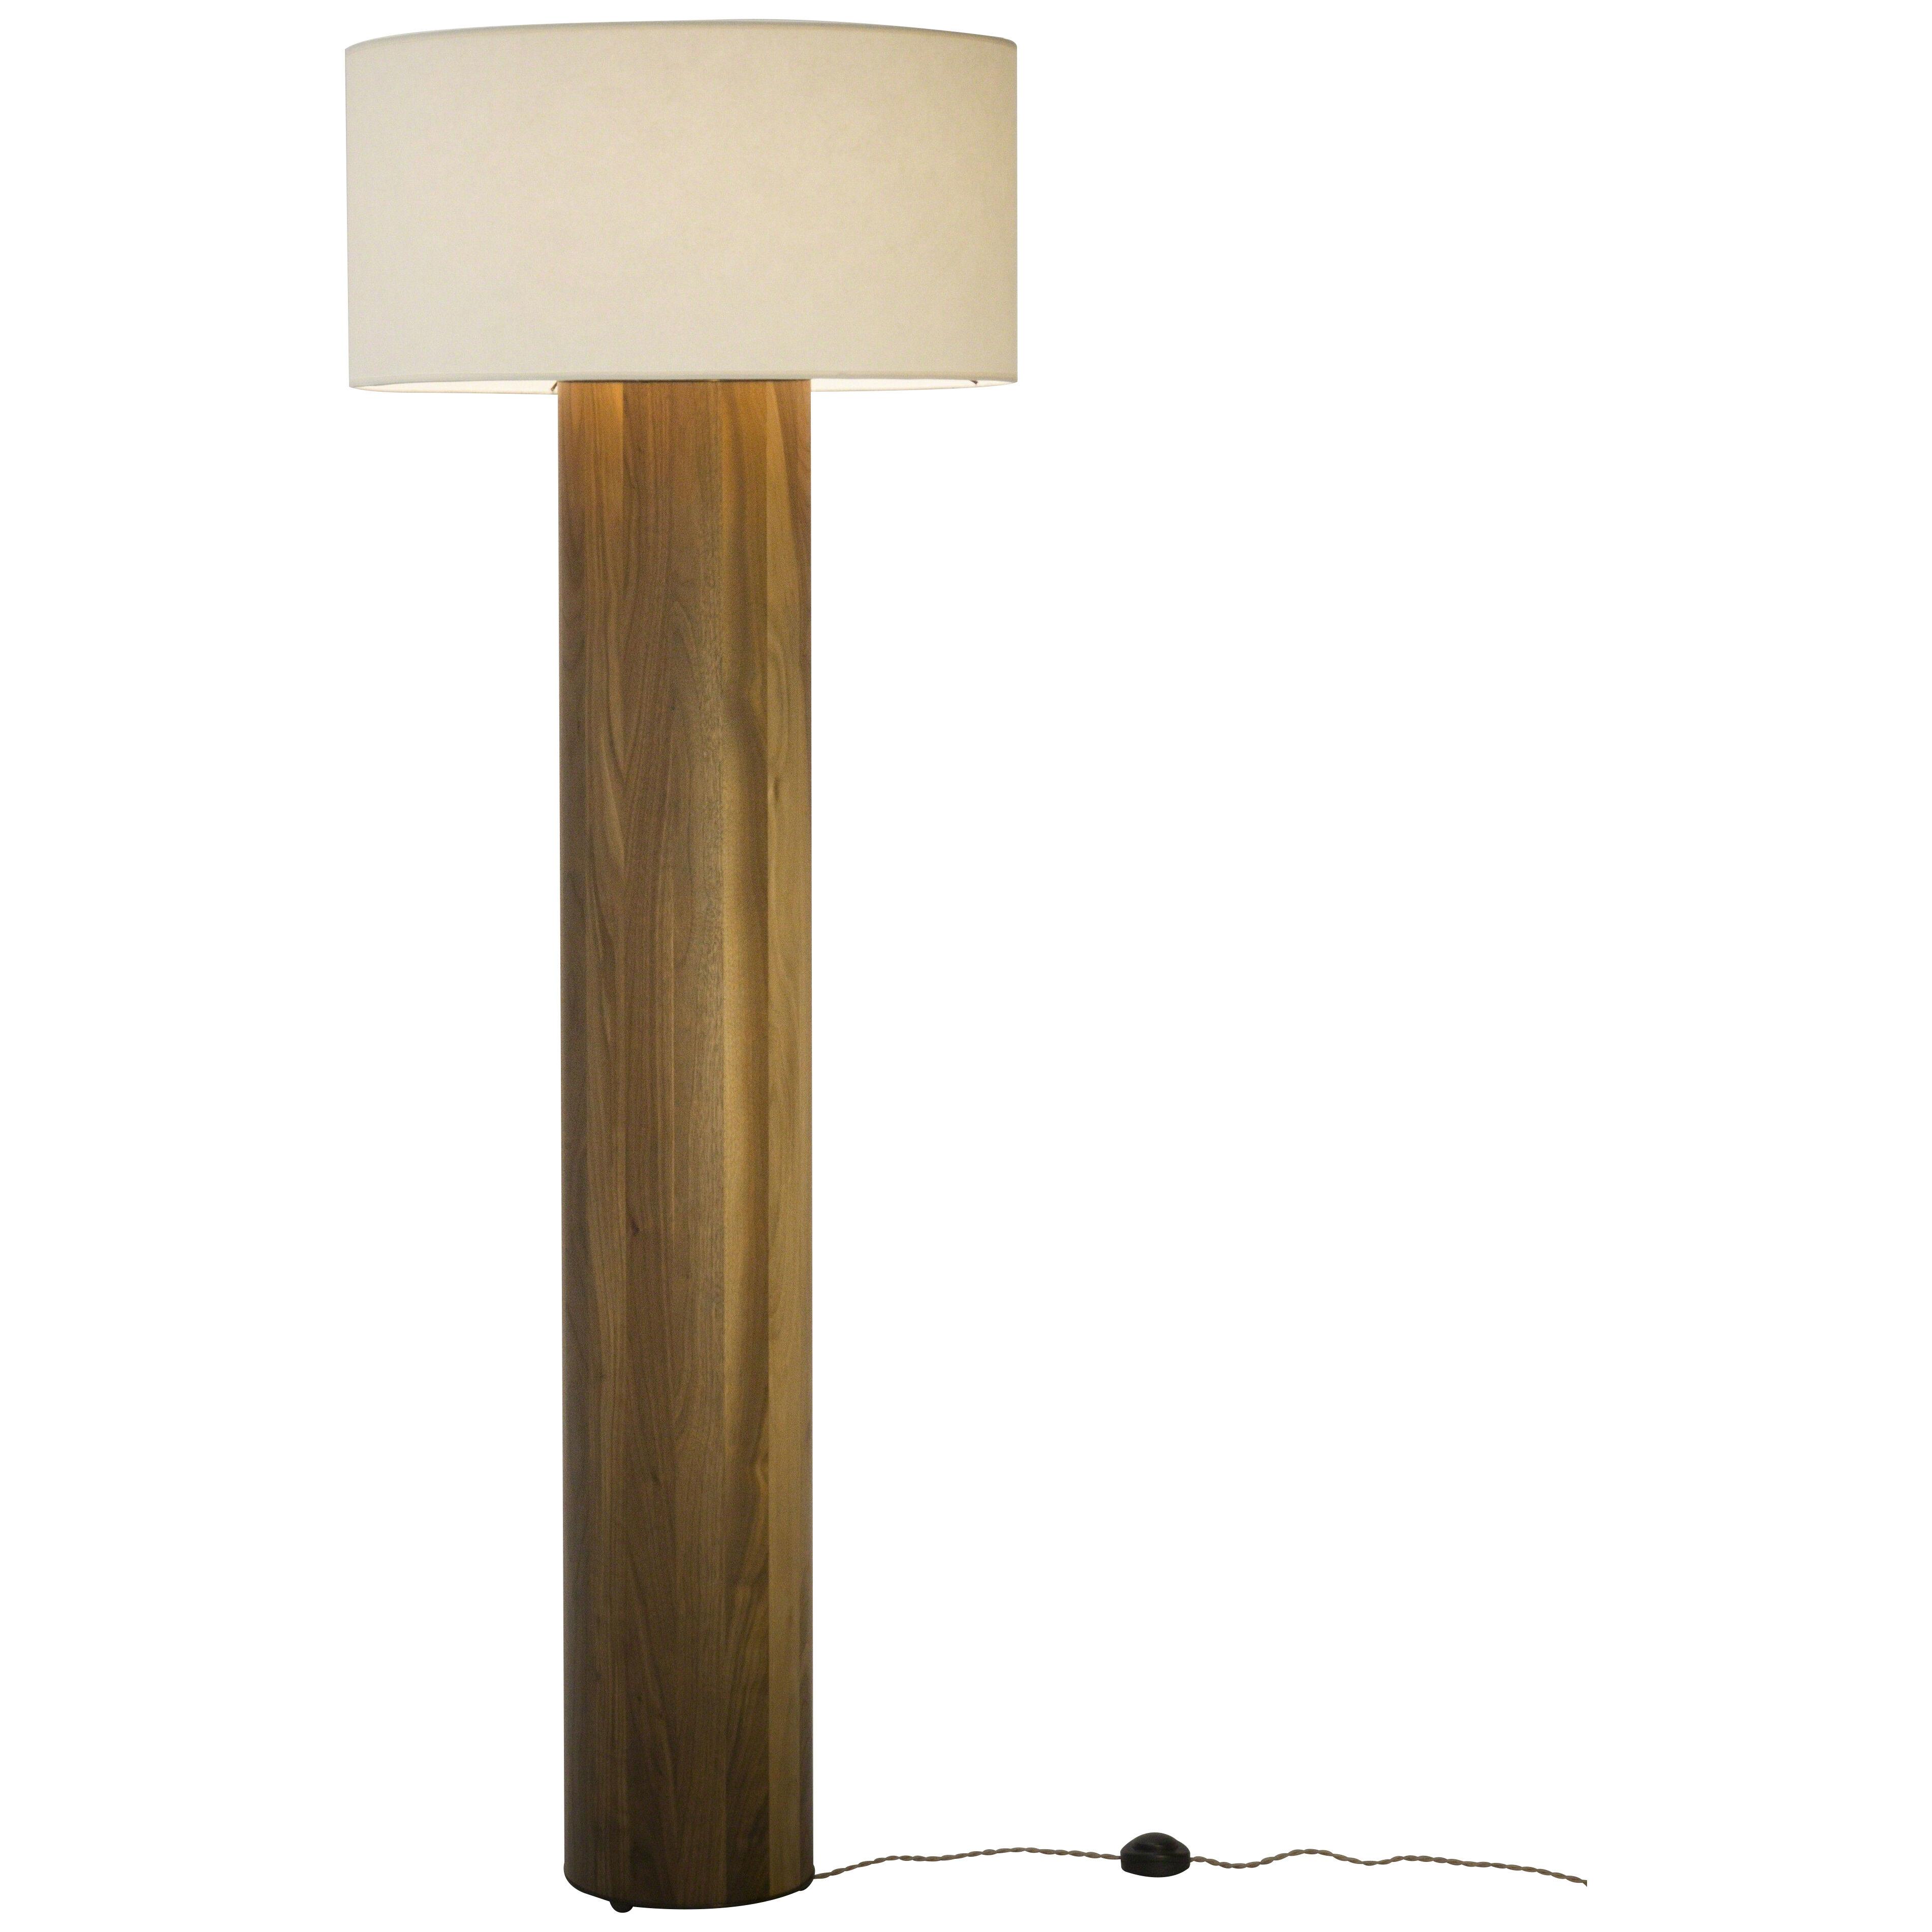 Floor lamp in Walnut